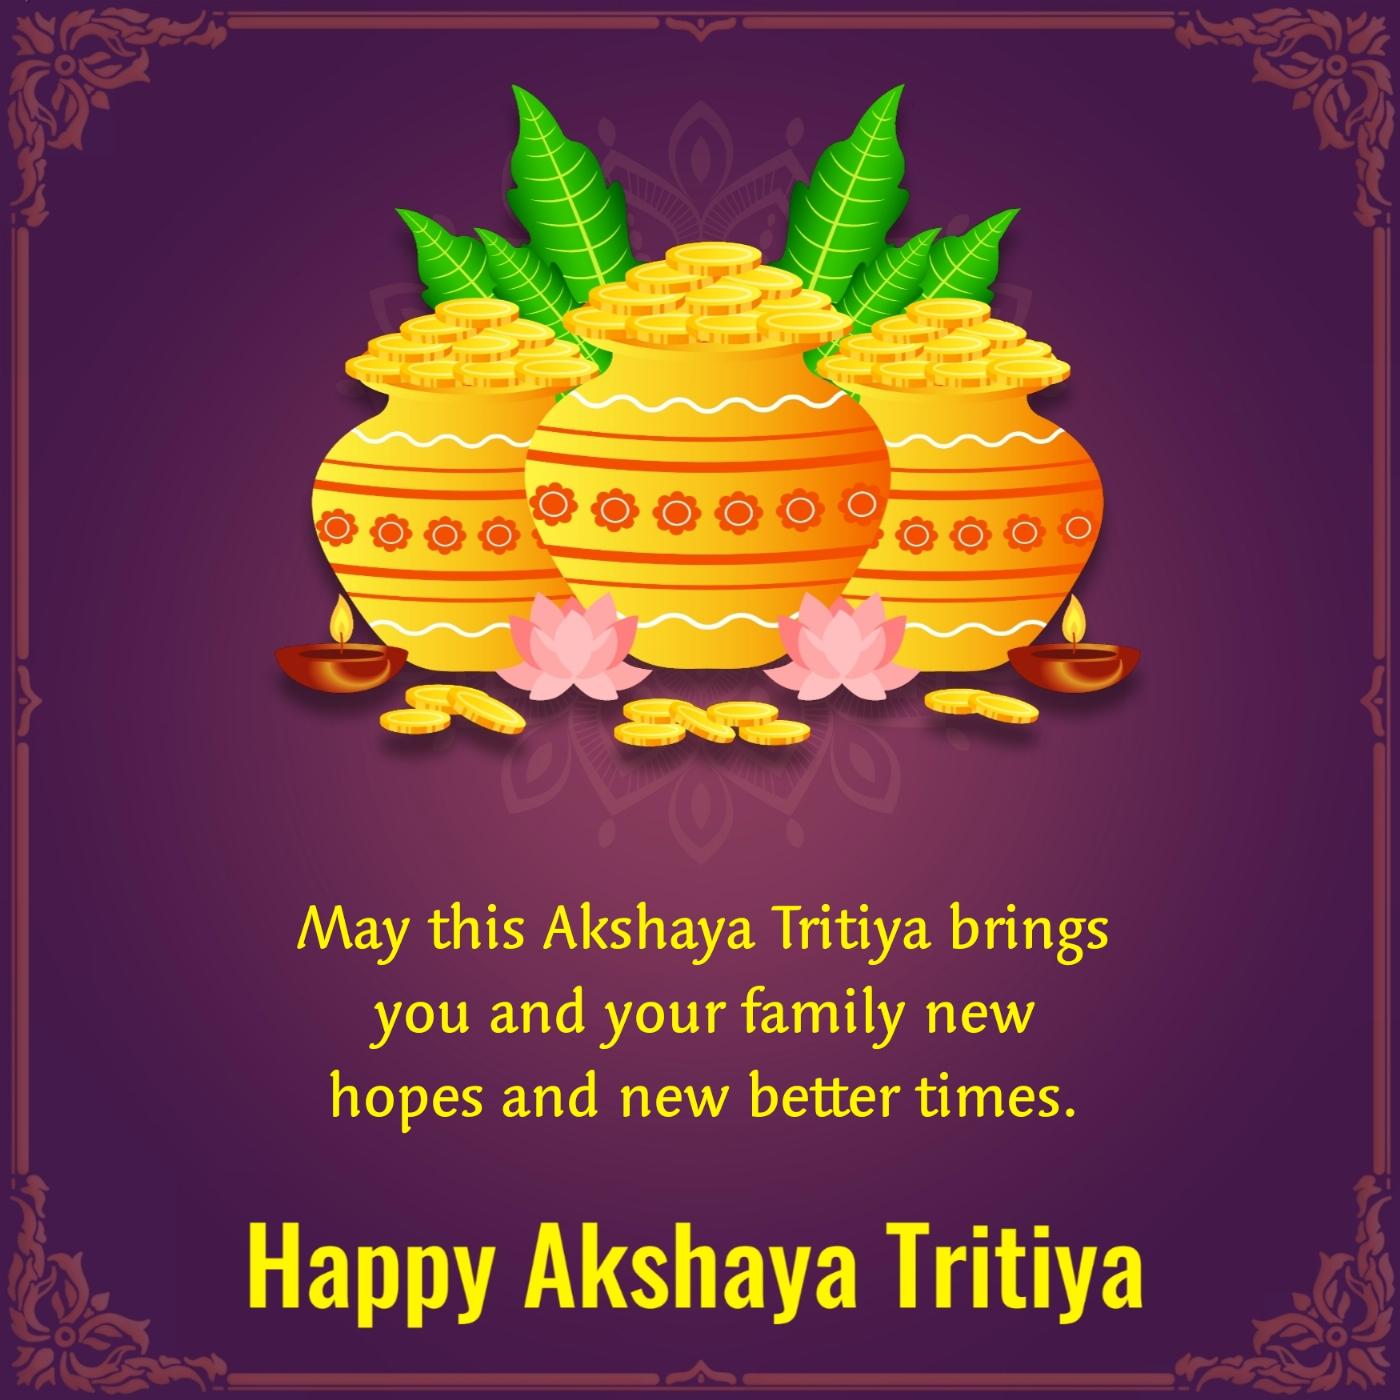 May this Akshaya Tritiya brings you and your family new hopes